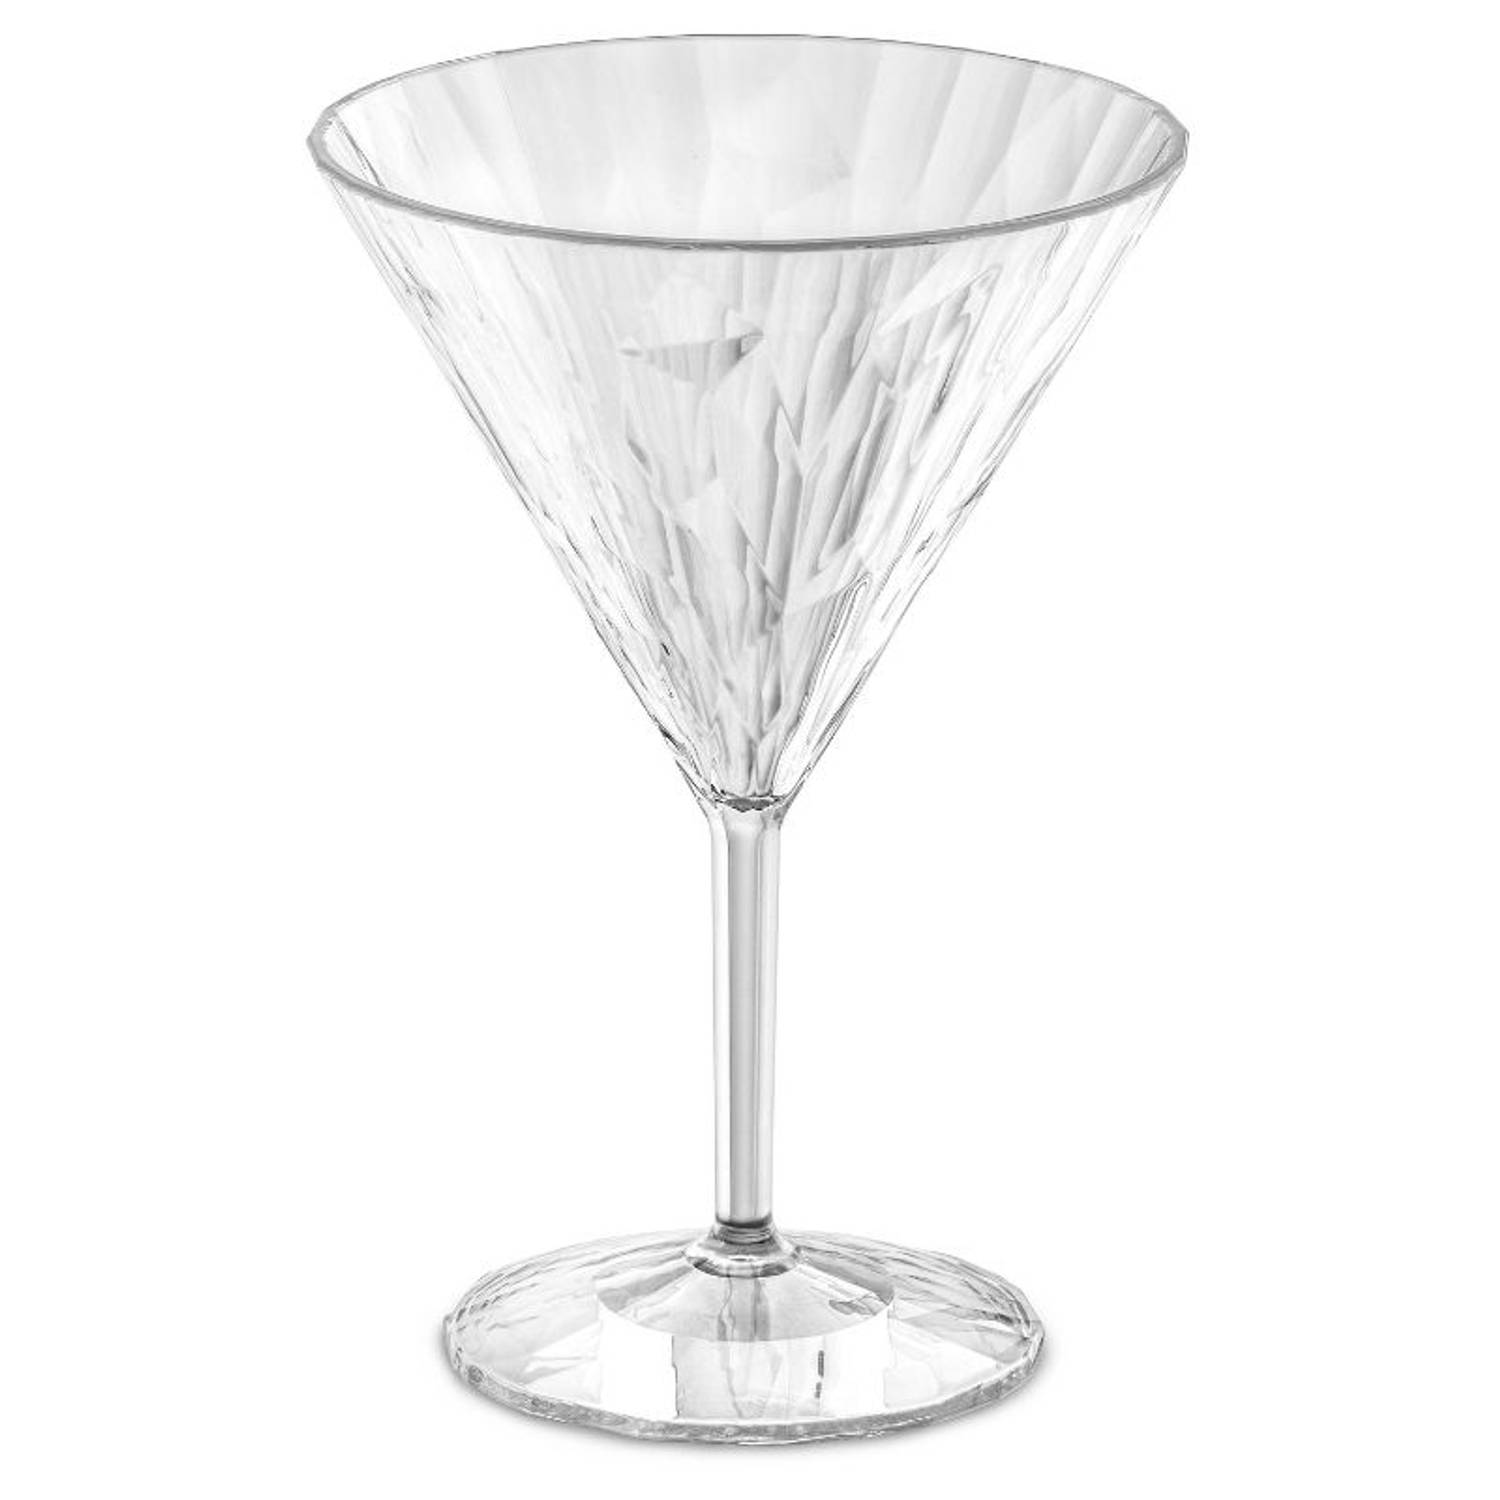 Martiniglas, 250 ml - Koziol | Club No. 12